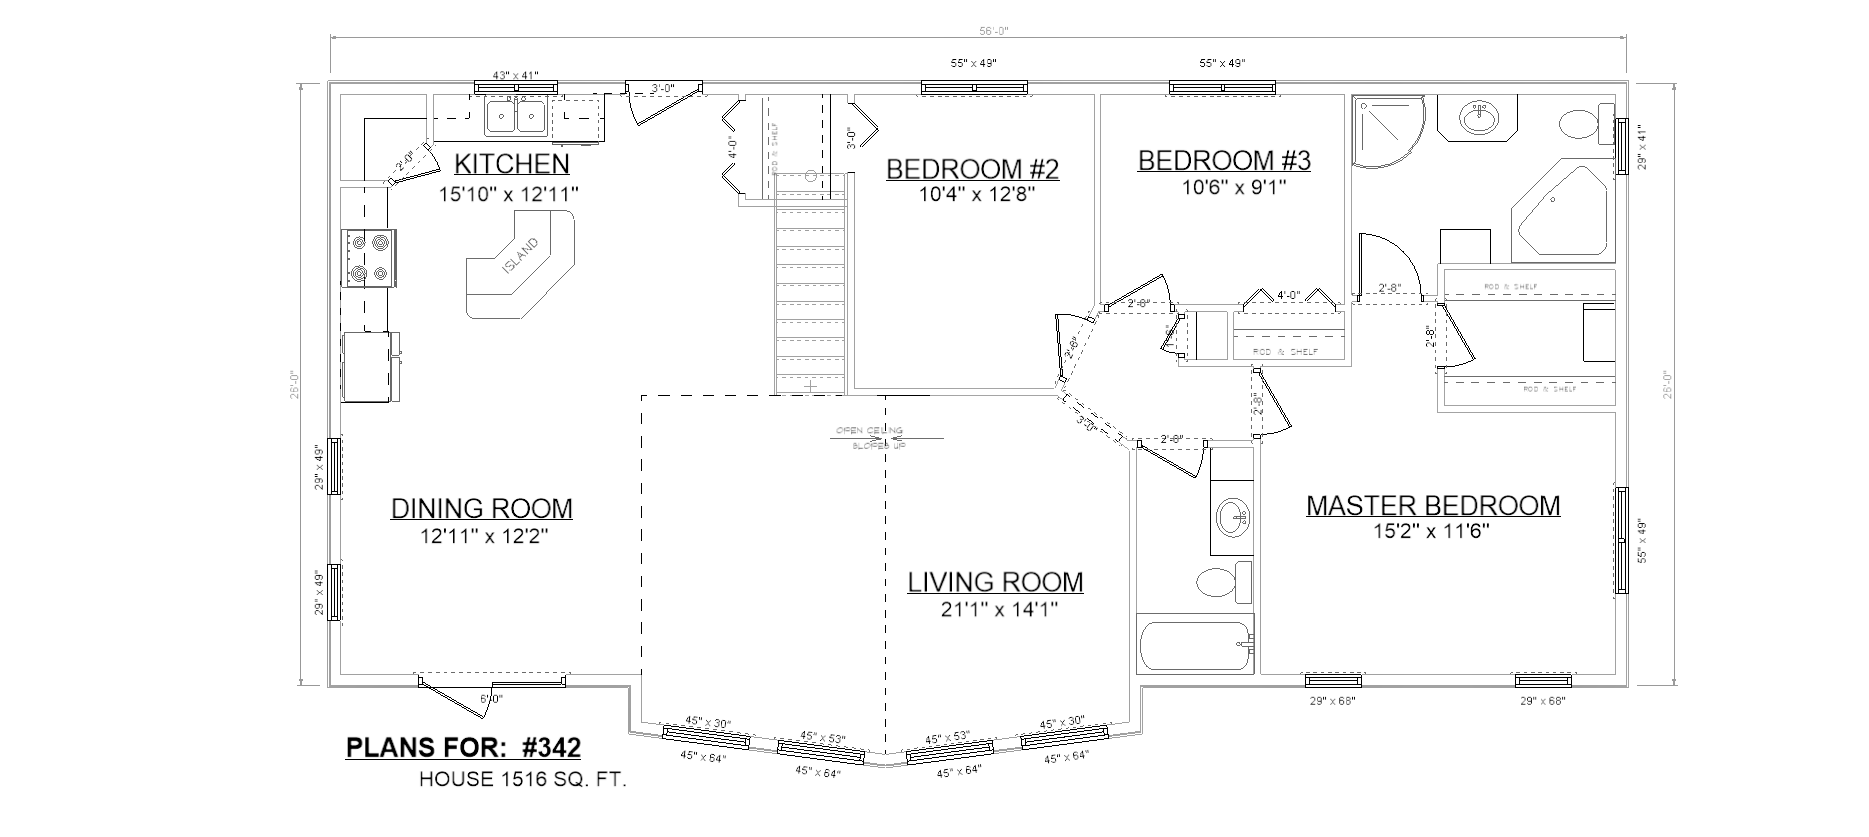 Penner Homes Floor Plan Id: 342